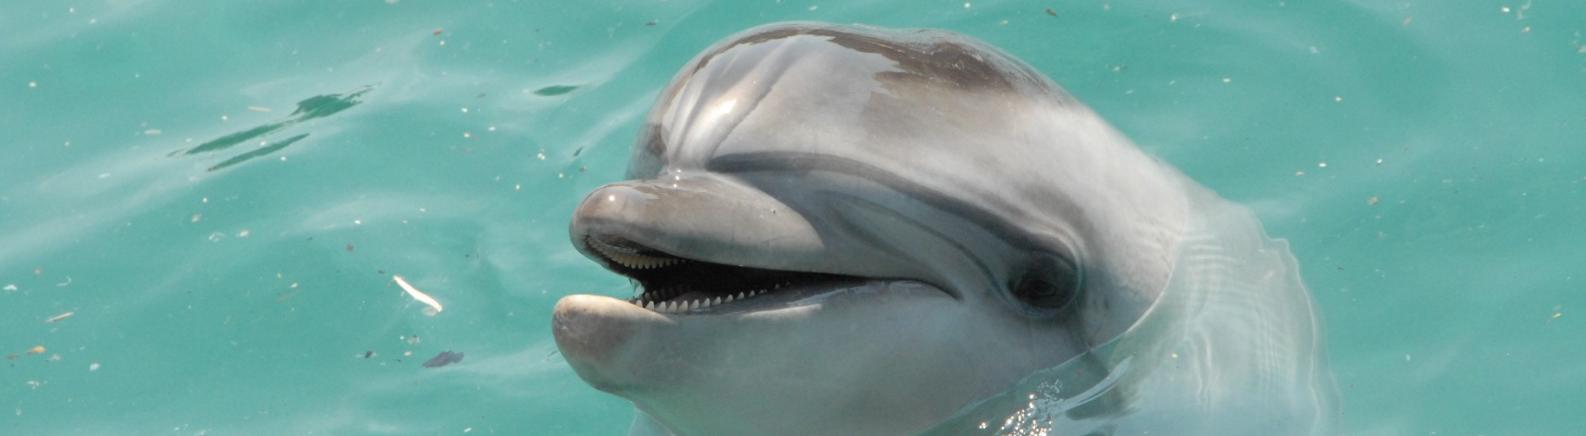 В начале весны жители Ростова могут увидеть дельфинов в Дону 